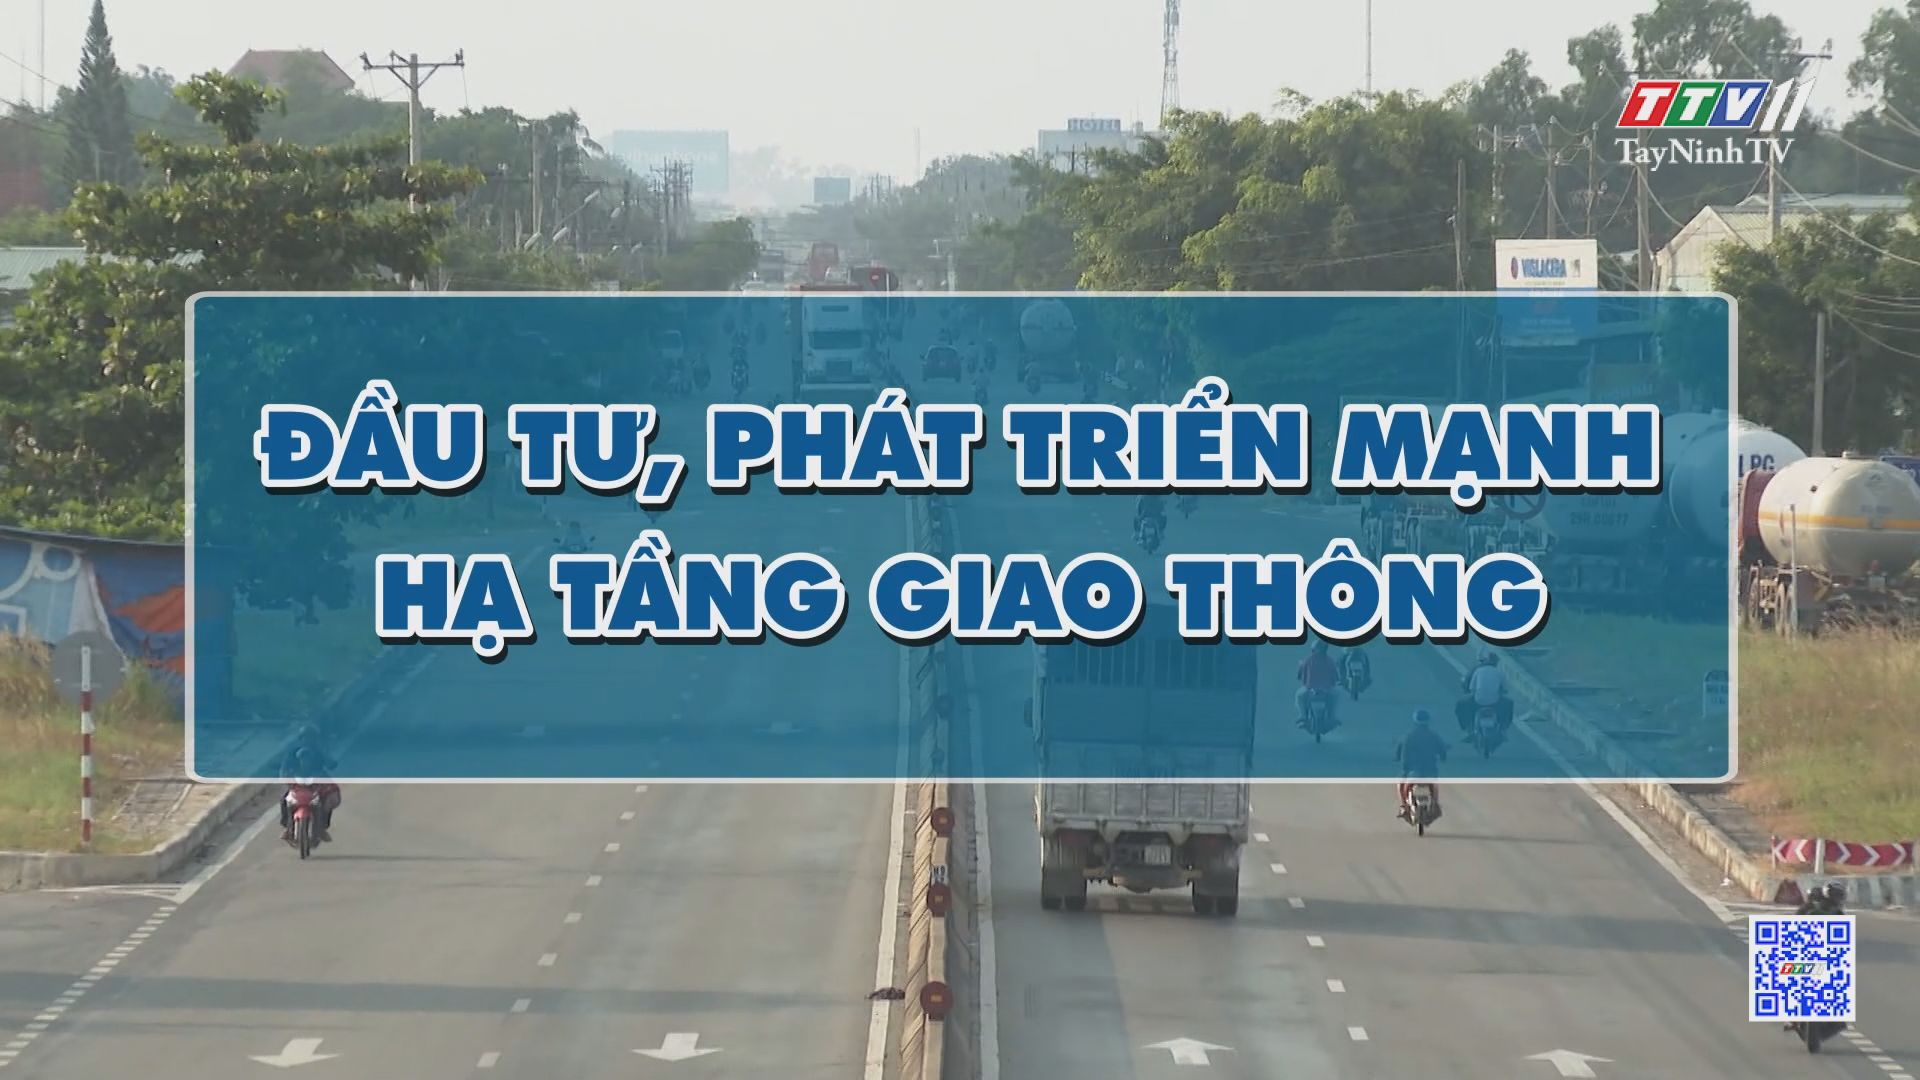 Đầu tư phát triển mạnh hạ tầng giao thông | NHỮNG VẤN ĐỀ HÔM NAY | TayNinhTV